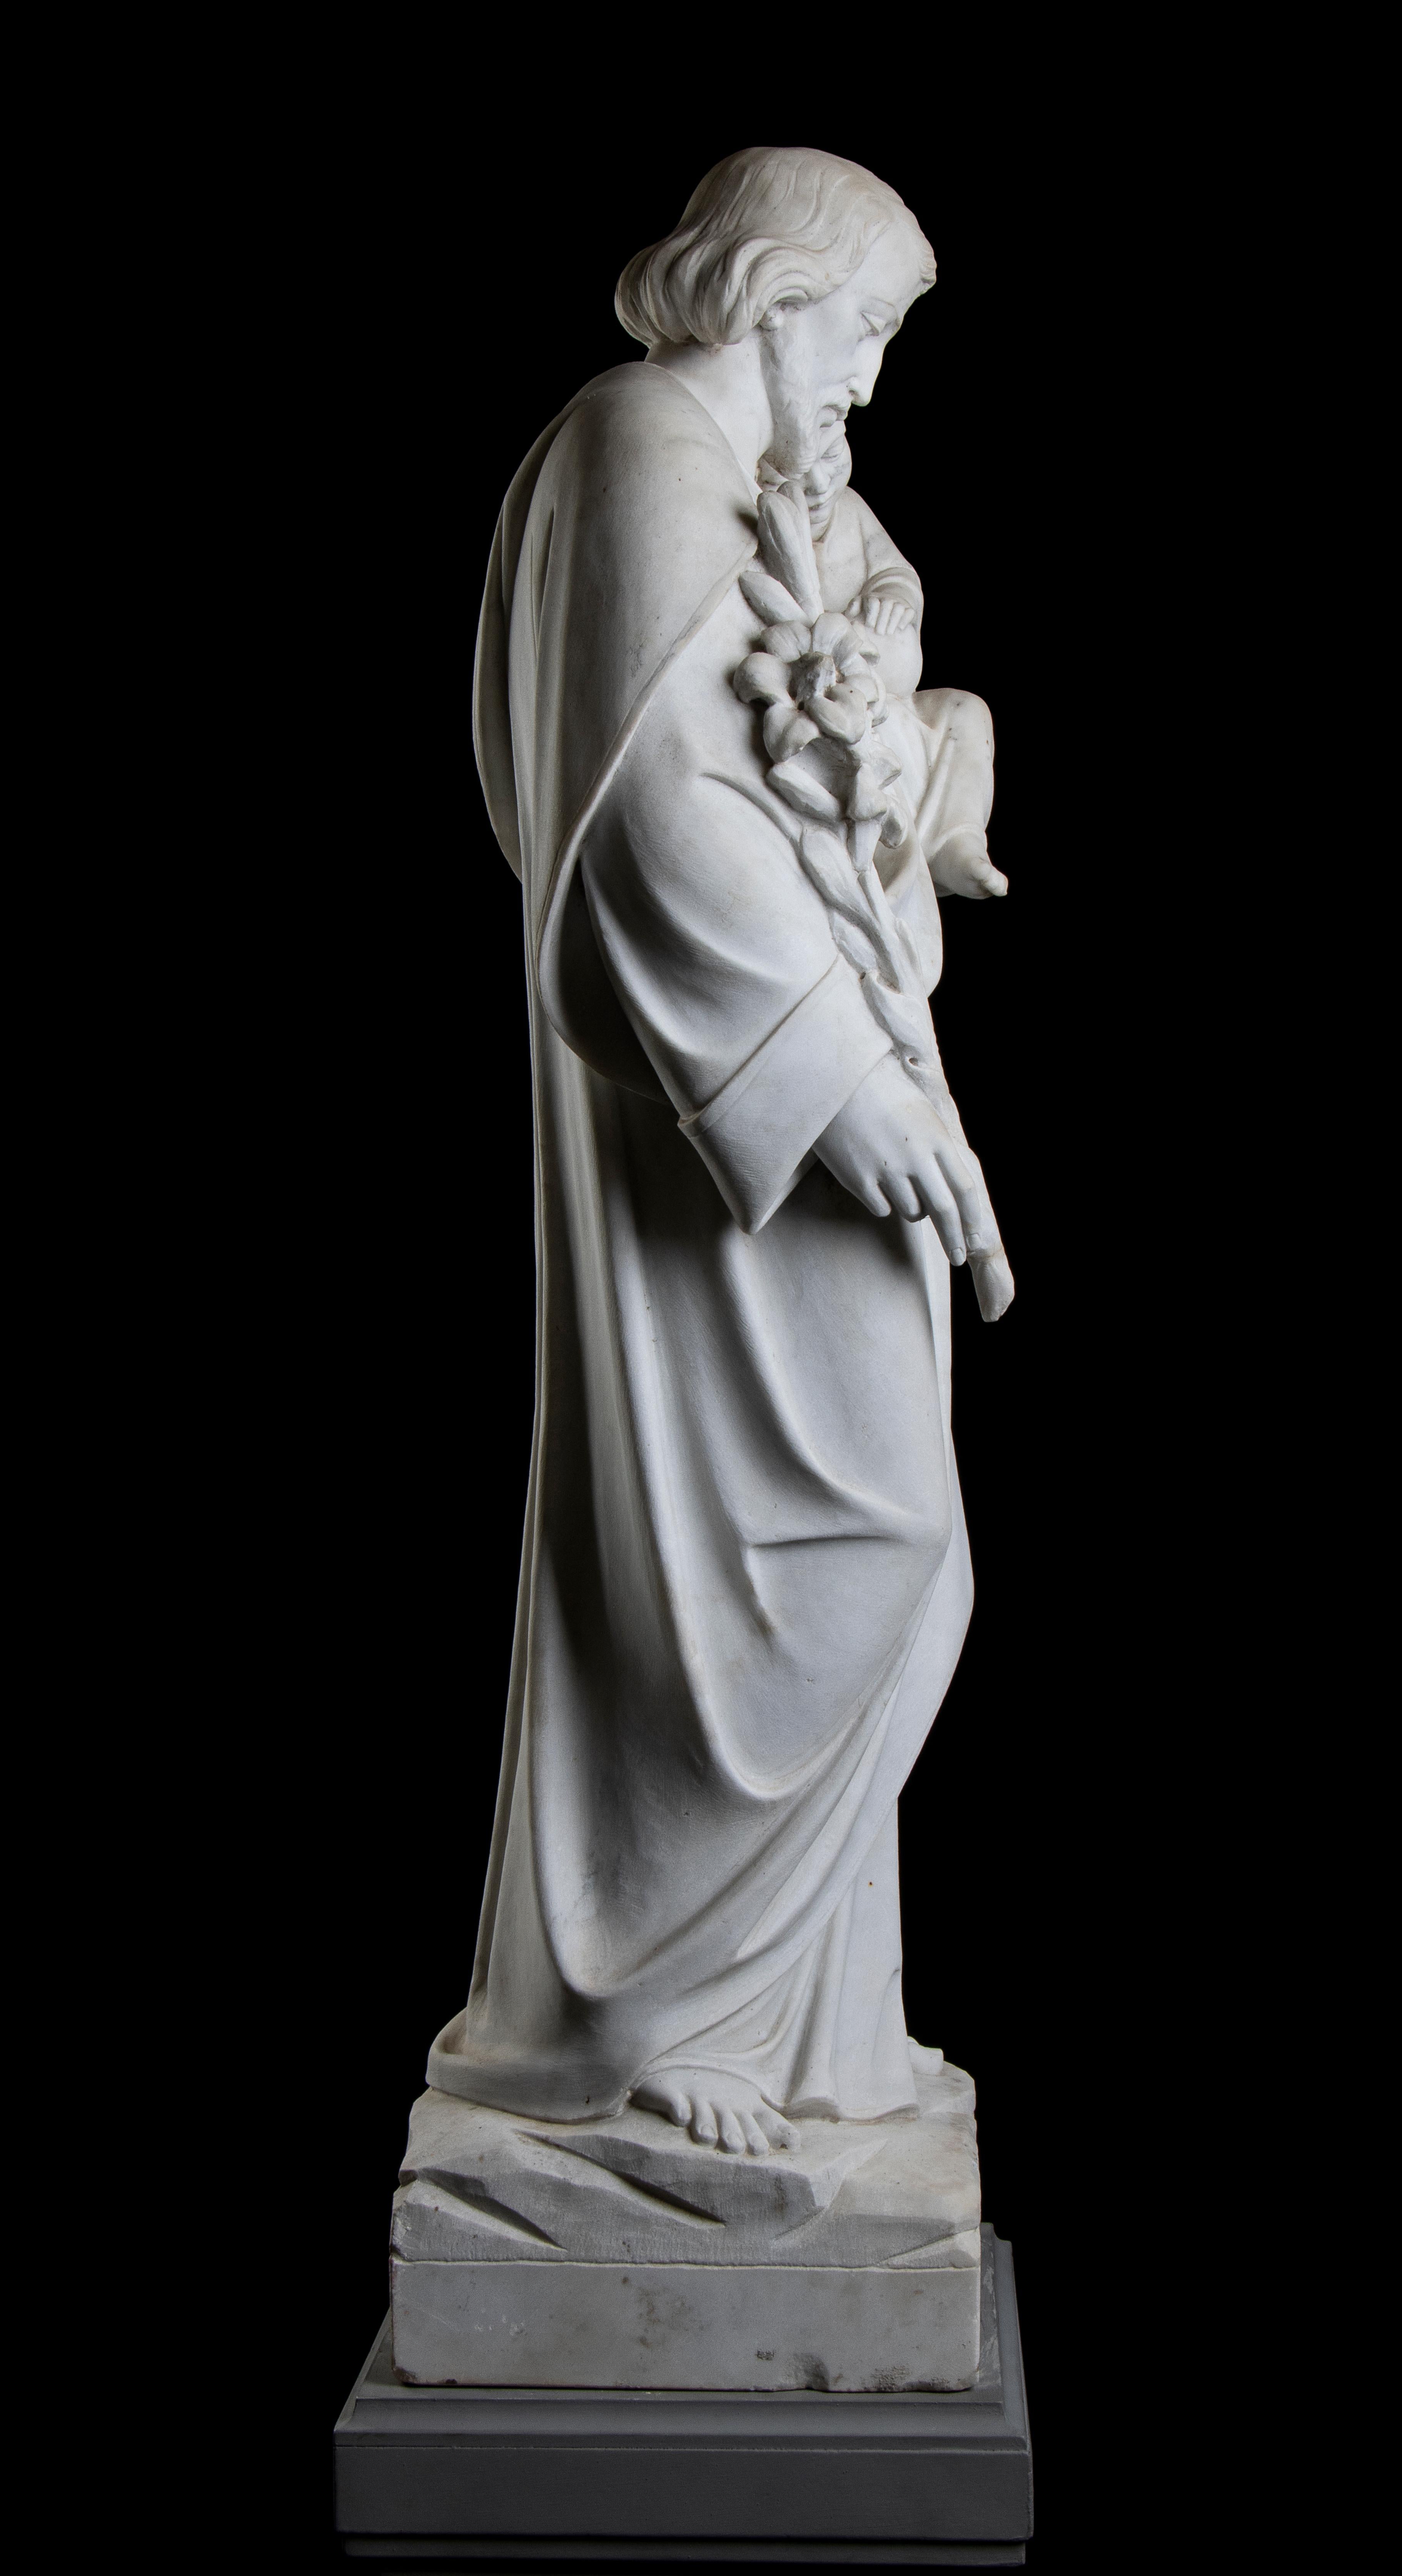 Eine sehr interessante italienische Skulptur aus weißem Marmor, die den heiligen Josef mit Jesus Christus als Kind darstellt, italienische Schule des 19. Jahrhunderts.
Der heilige Joseph ist in voller Größe dargestellt, mit der Lilienblüte in der